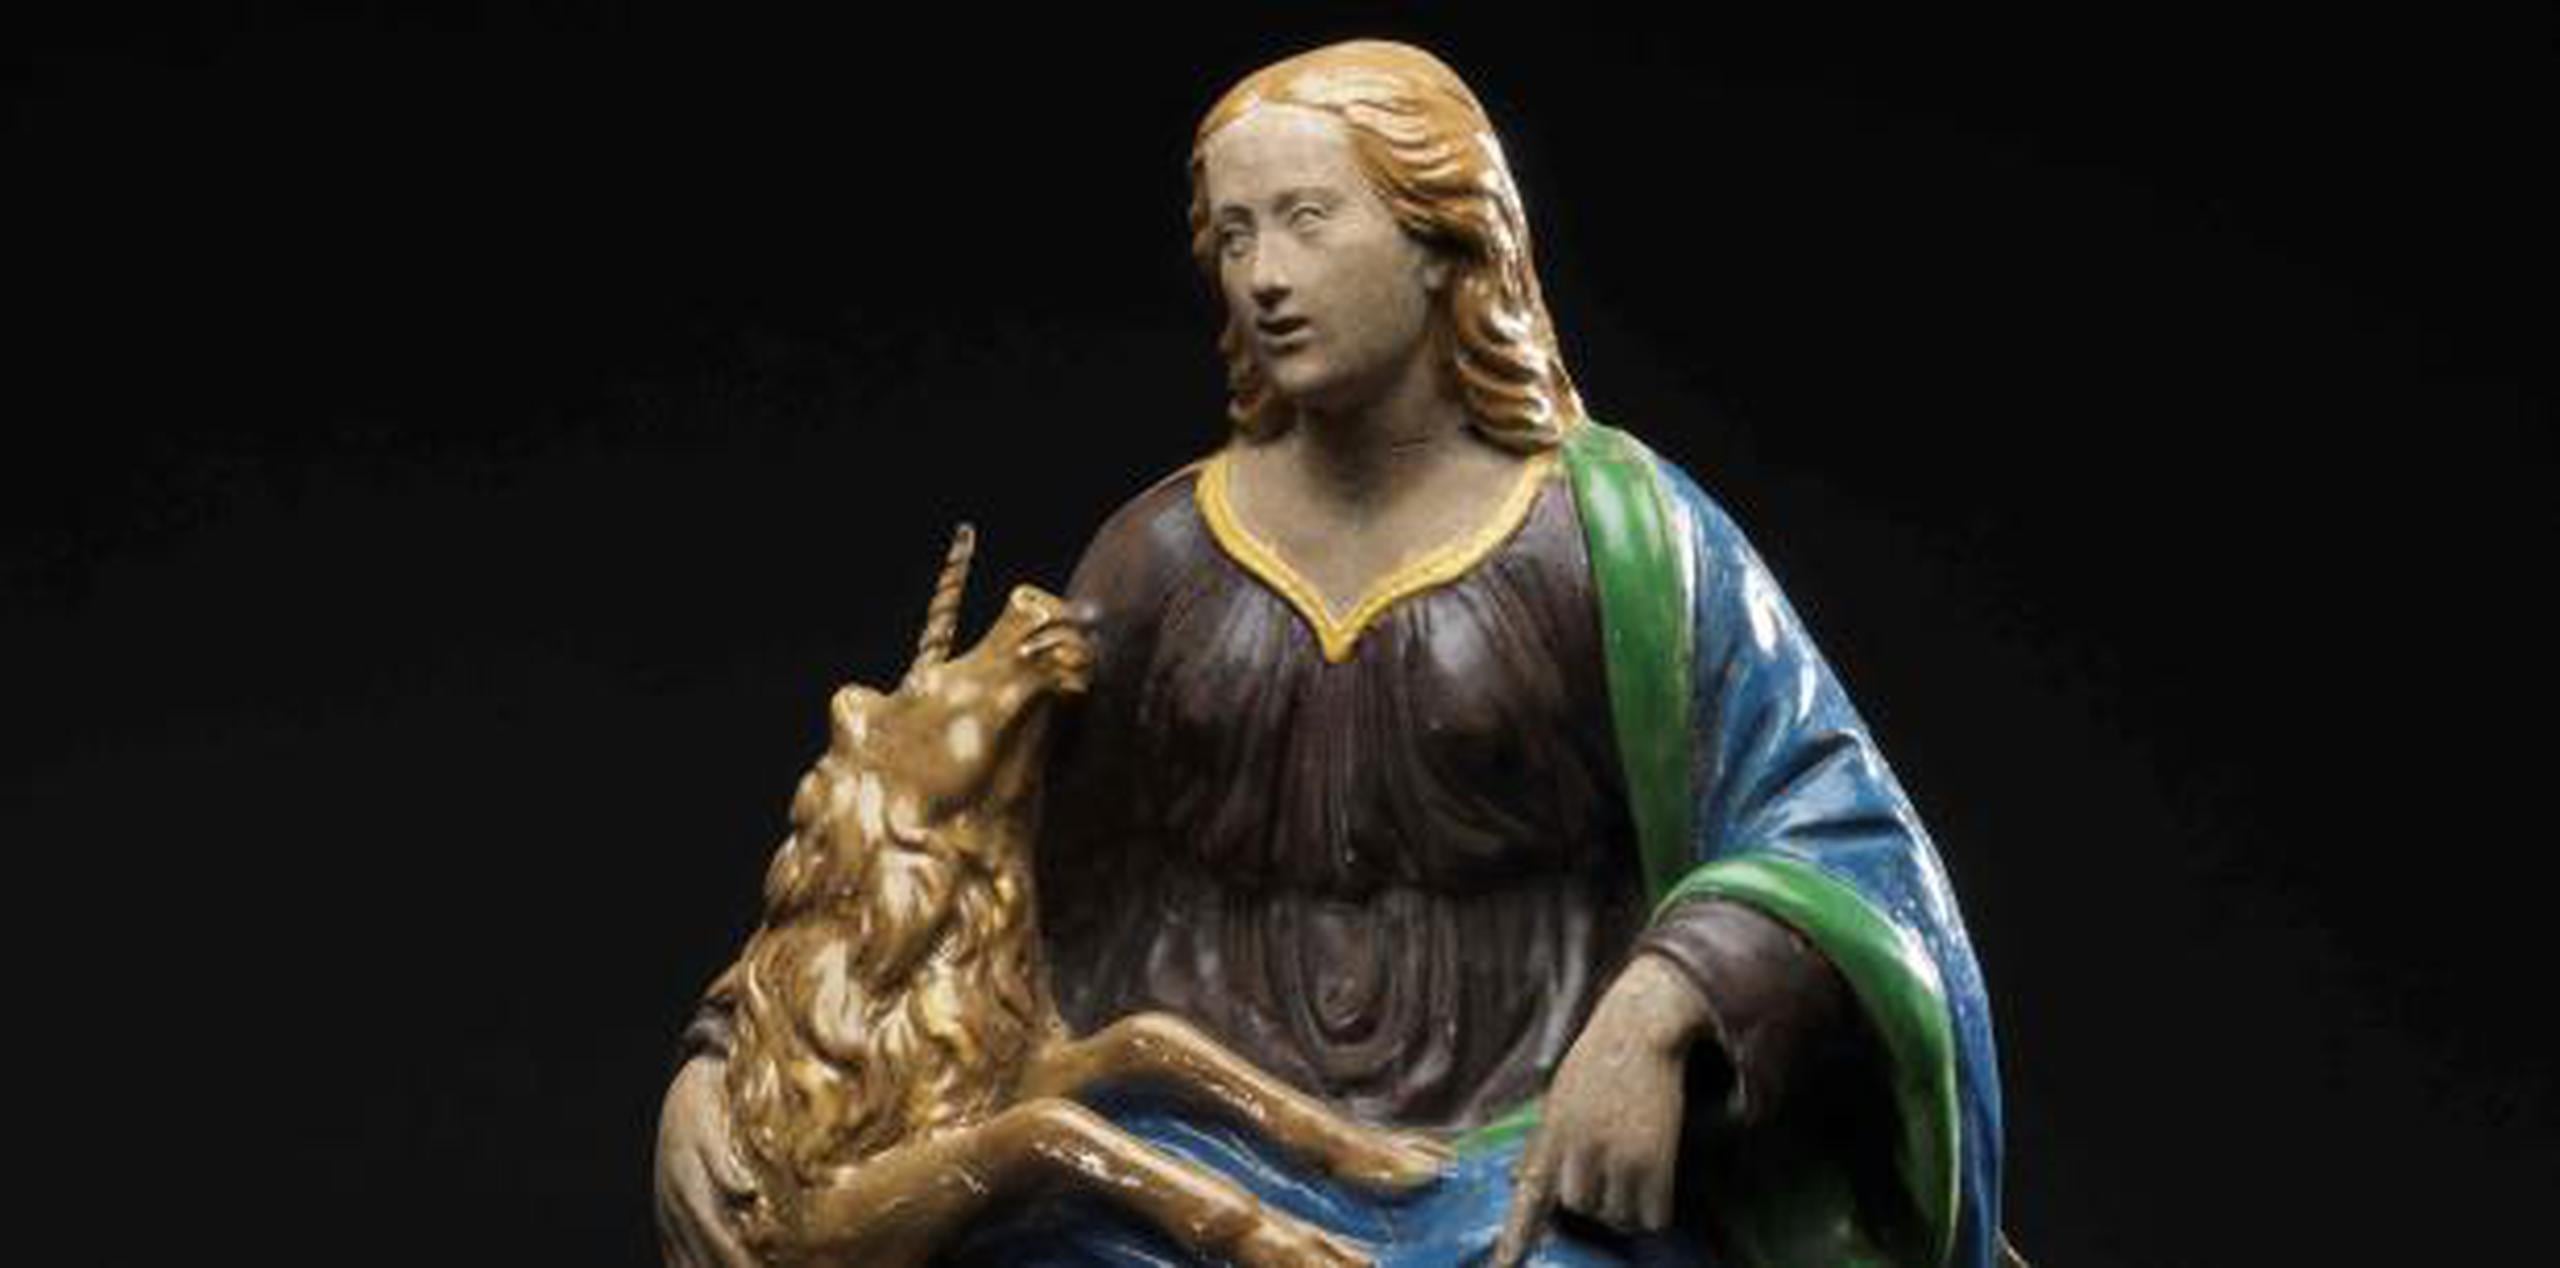 La escultura "Mujer y el Unicornio", una de las piezas que recoge la muestra "Unicornios mágicos", abierta hasta el 25 de febrero. (EFE)